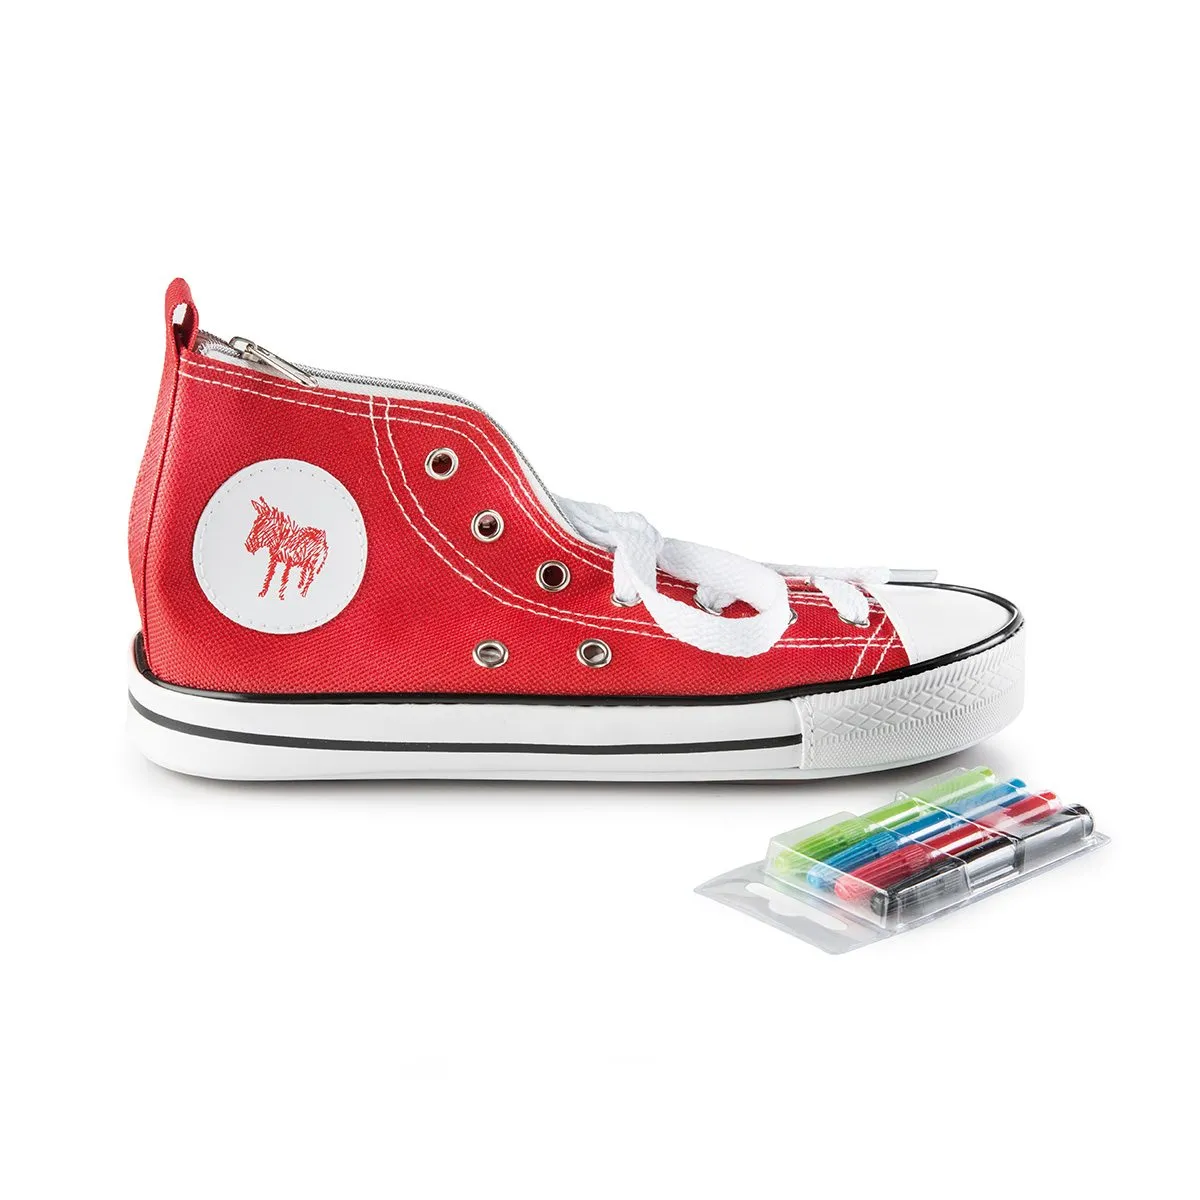 Trousse à crayons Sneakers à peindre - rouge